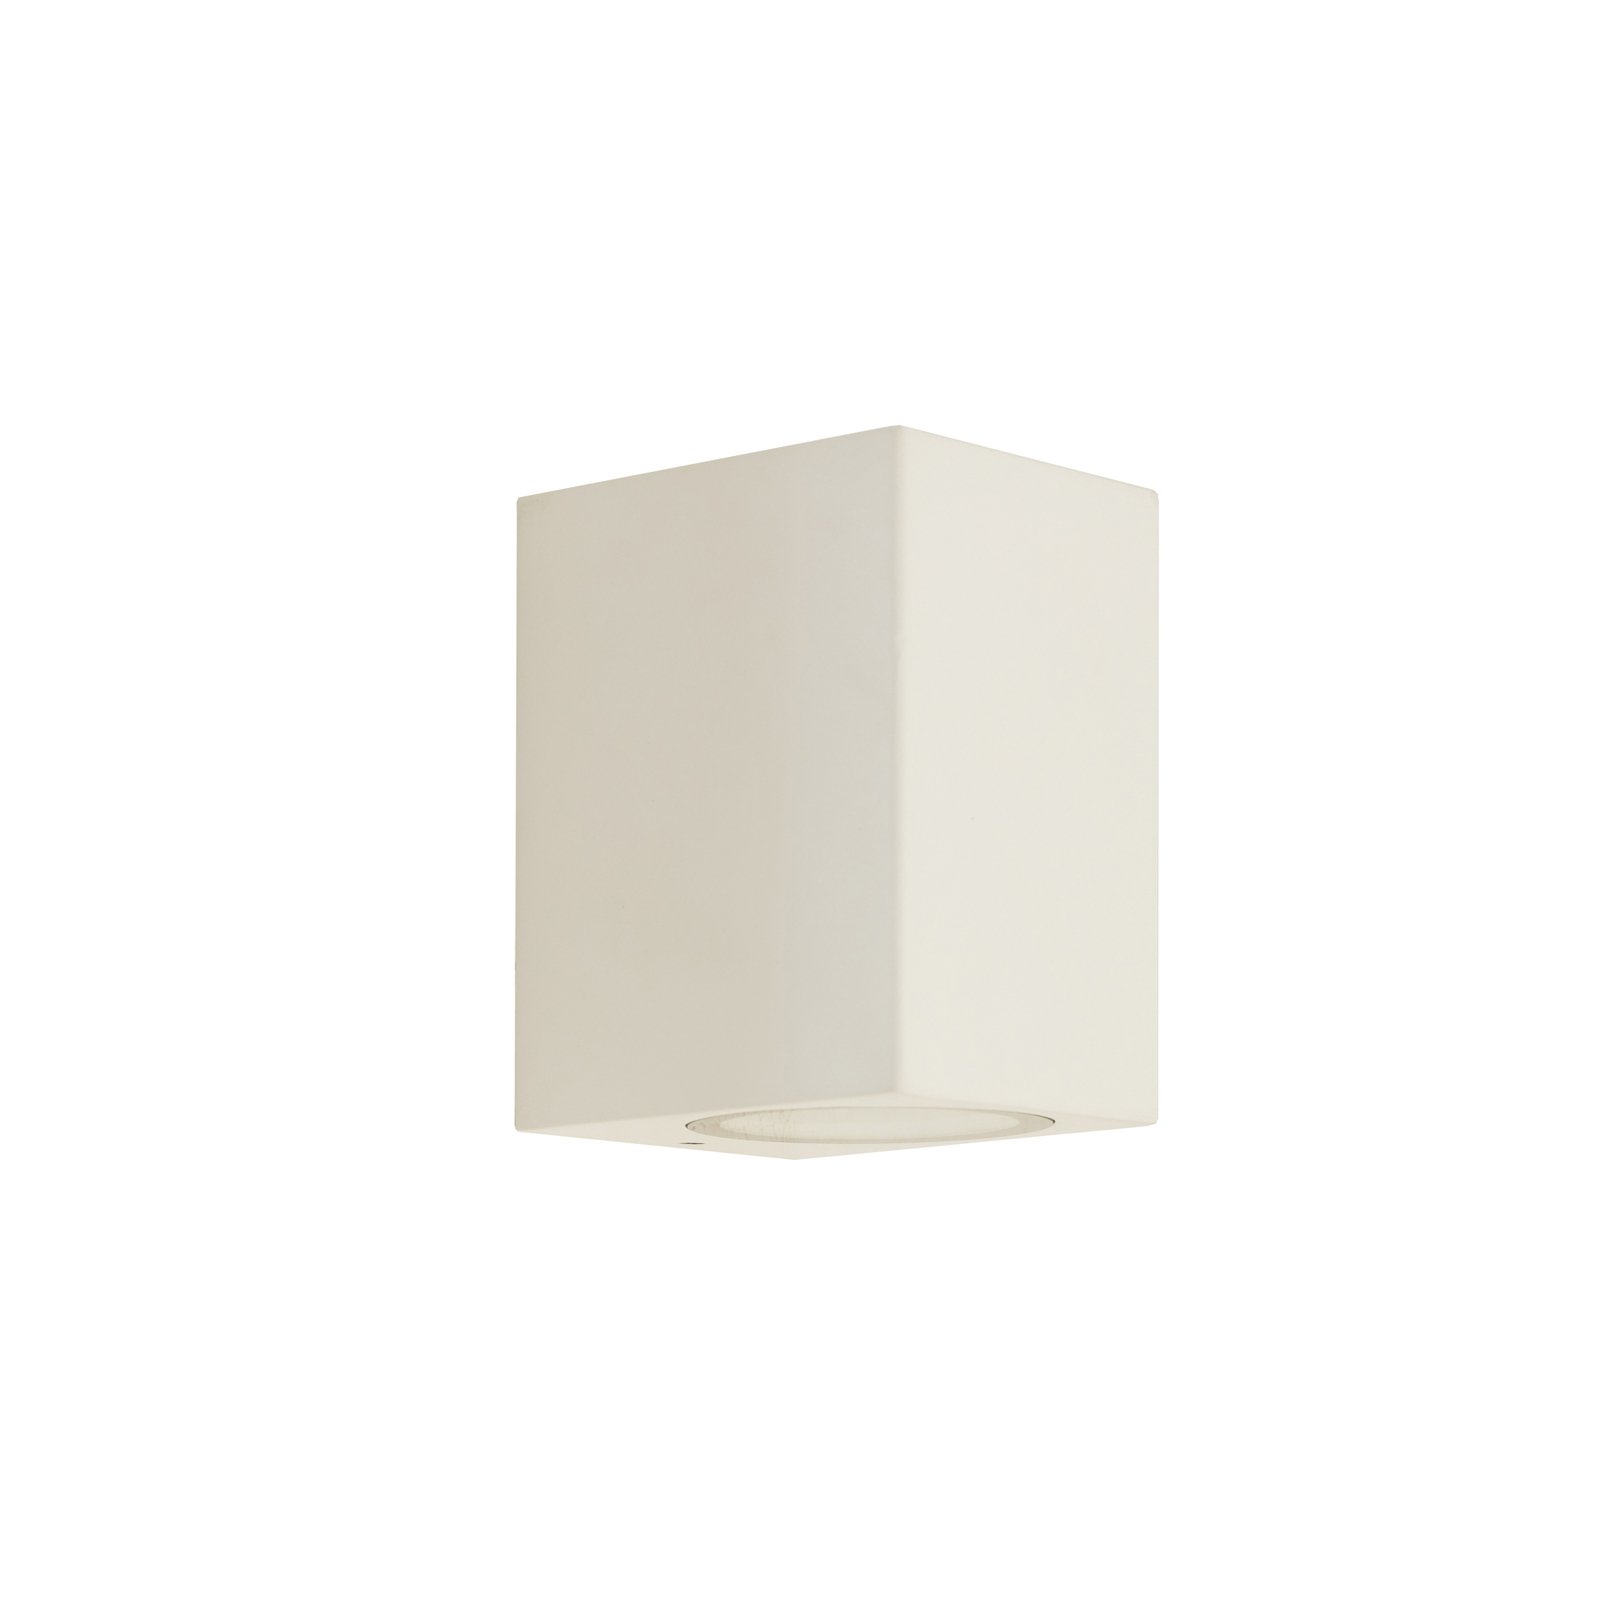 Prios kültéri fali lámpa Tetje, fehér, szögletes, 10 cm-es, szögletes